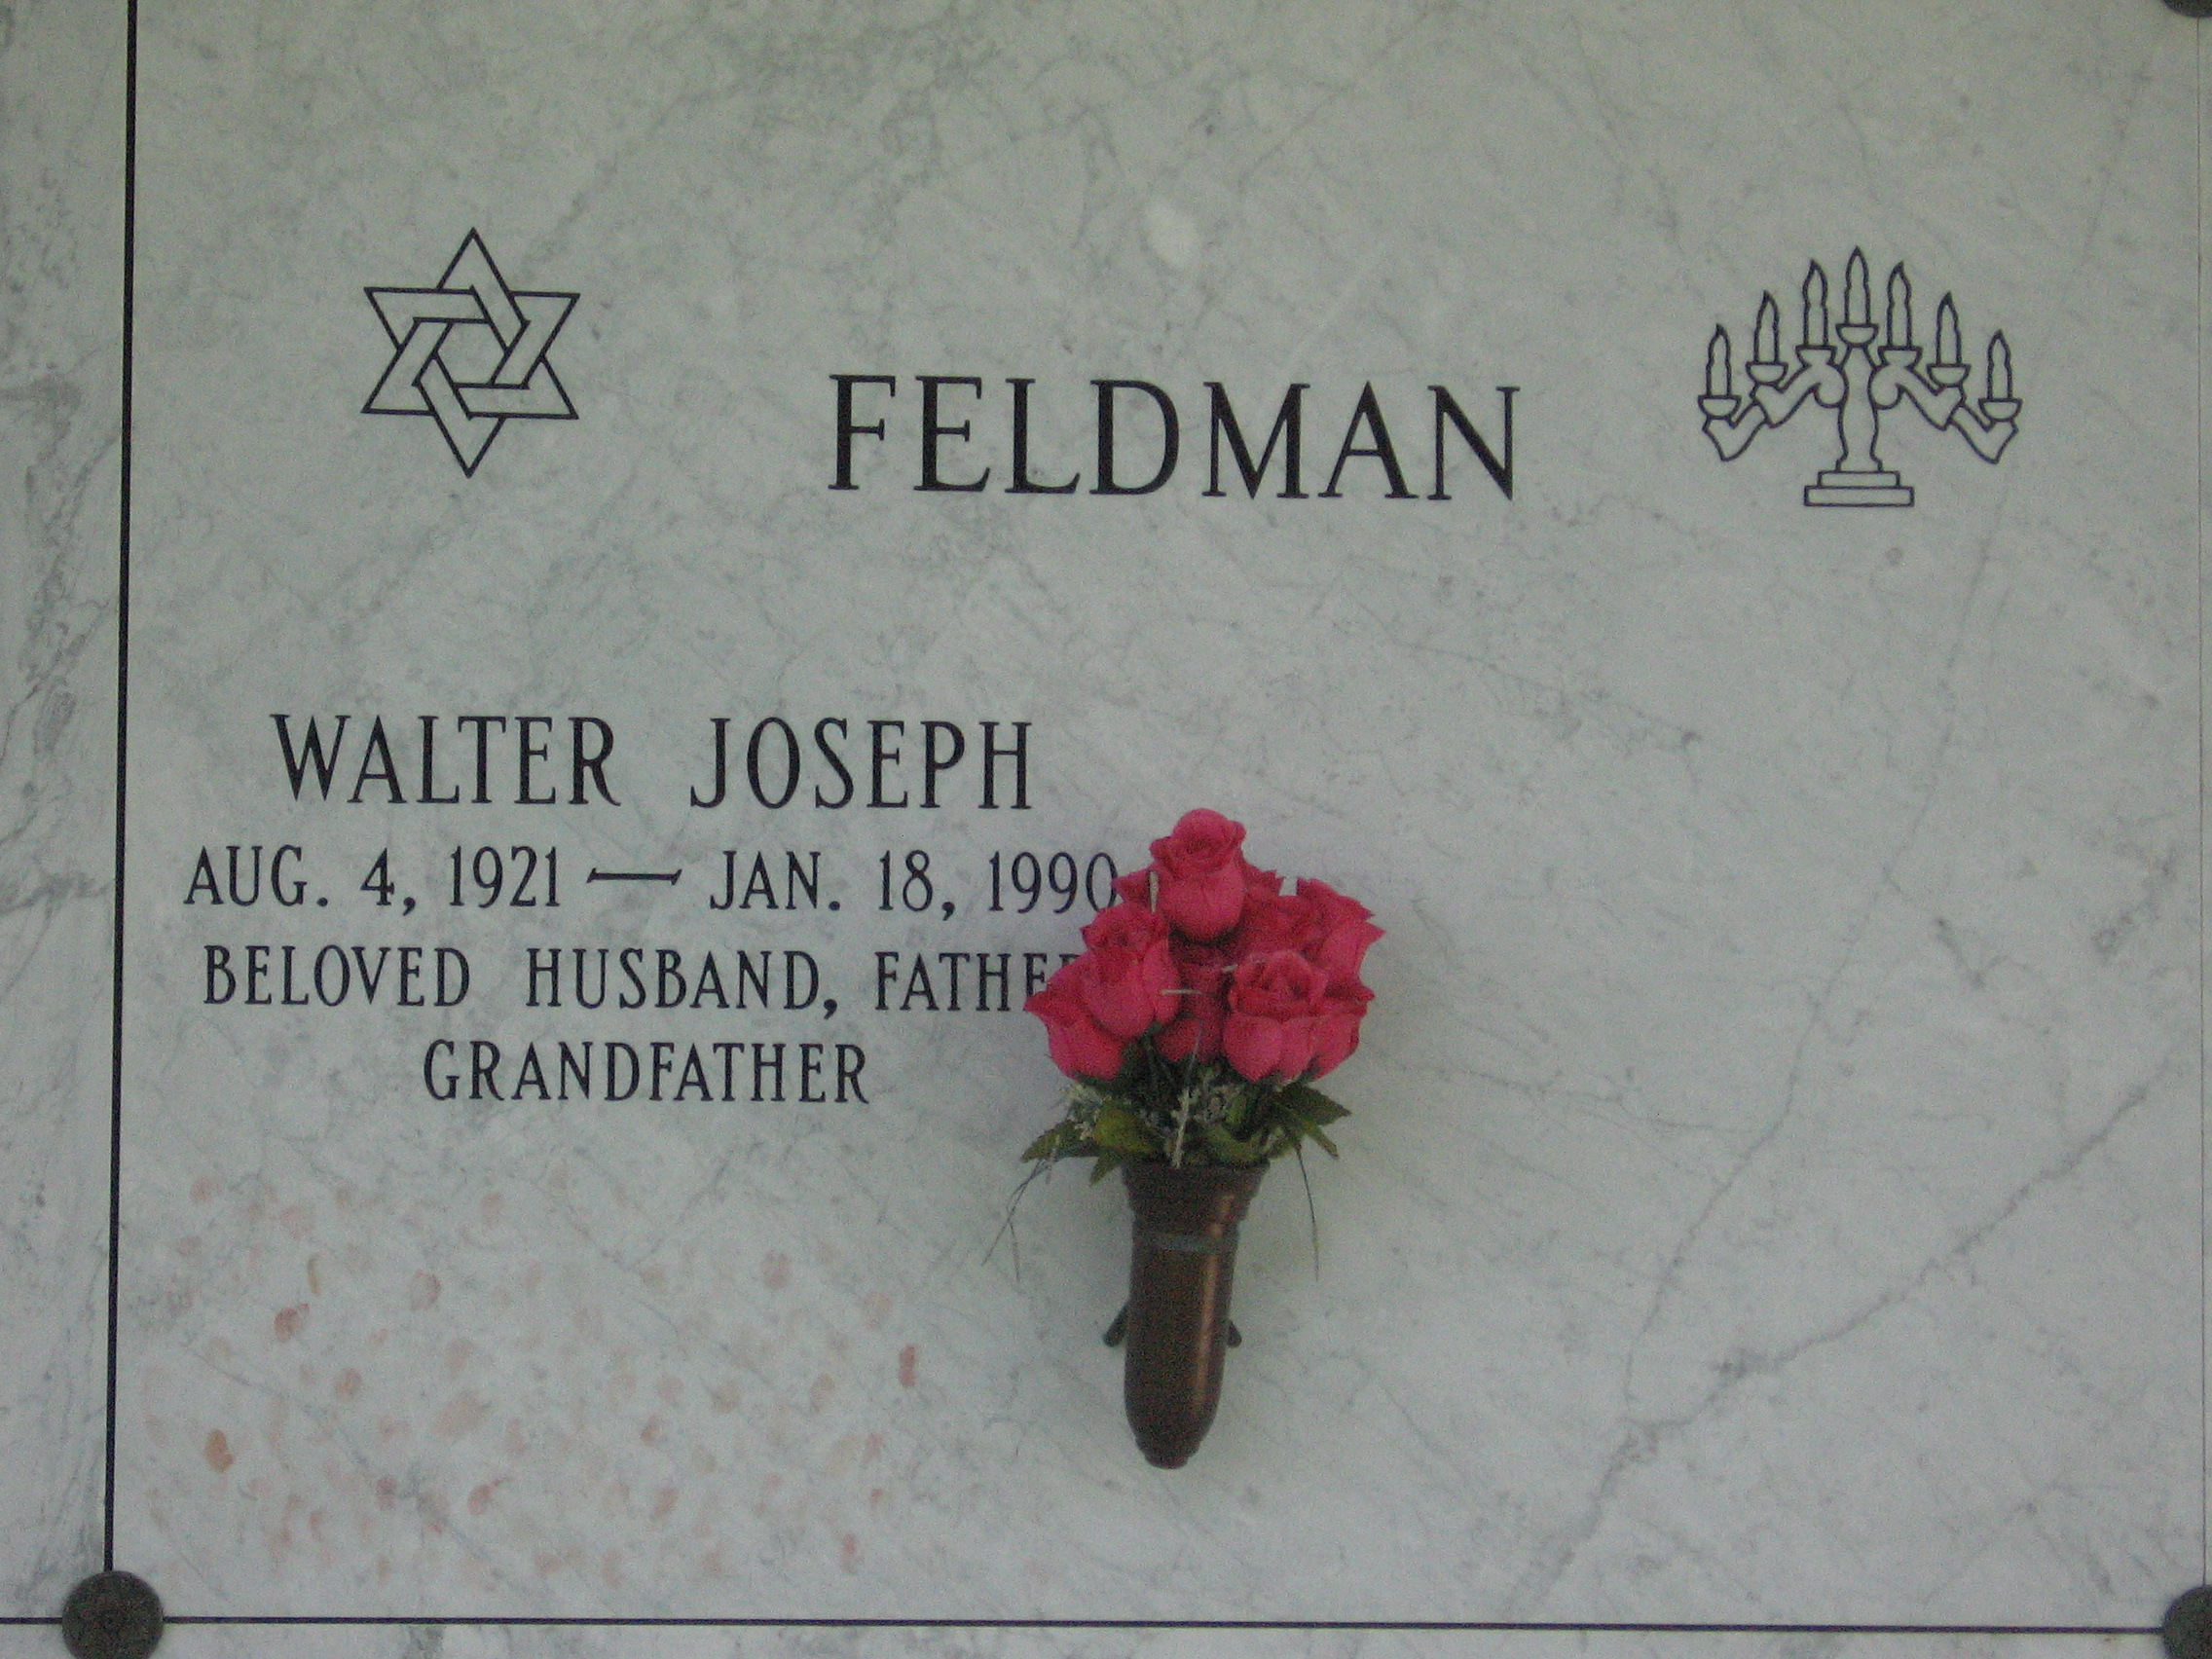 Walter Joseph Feldman